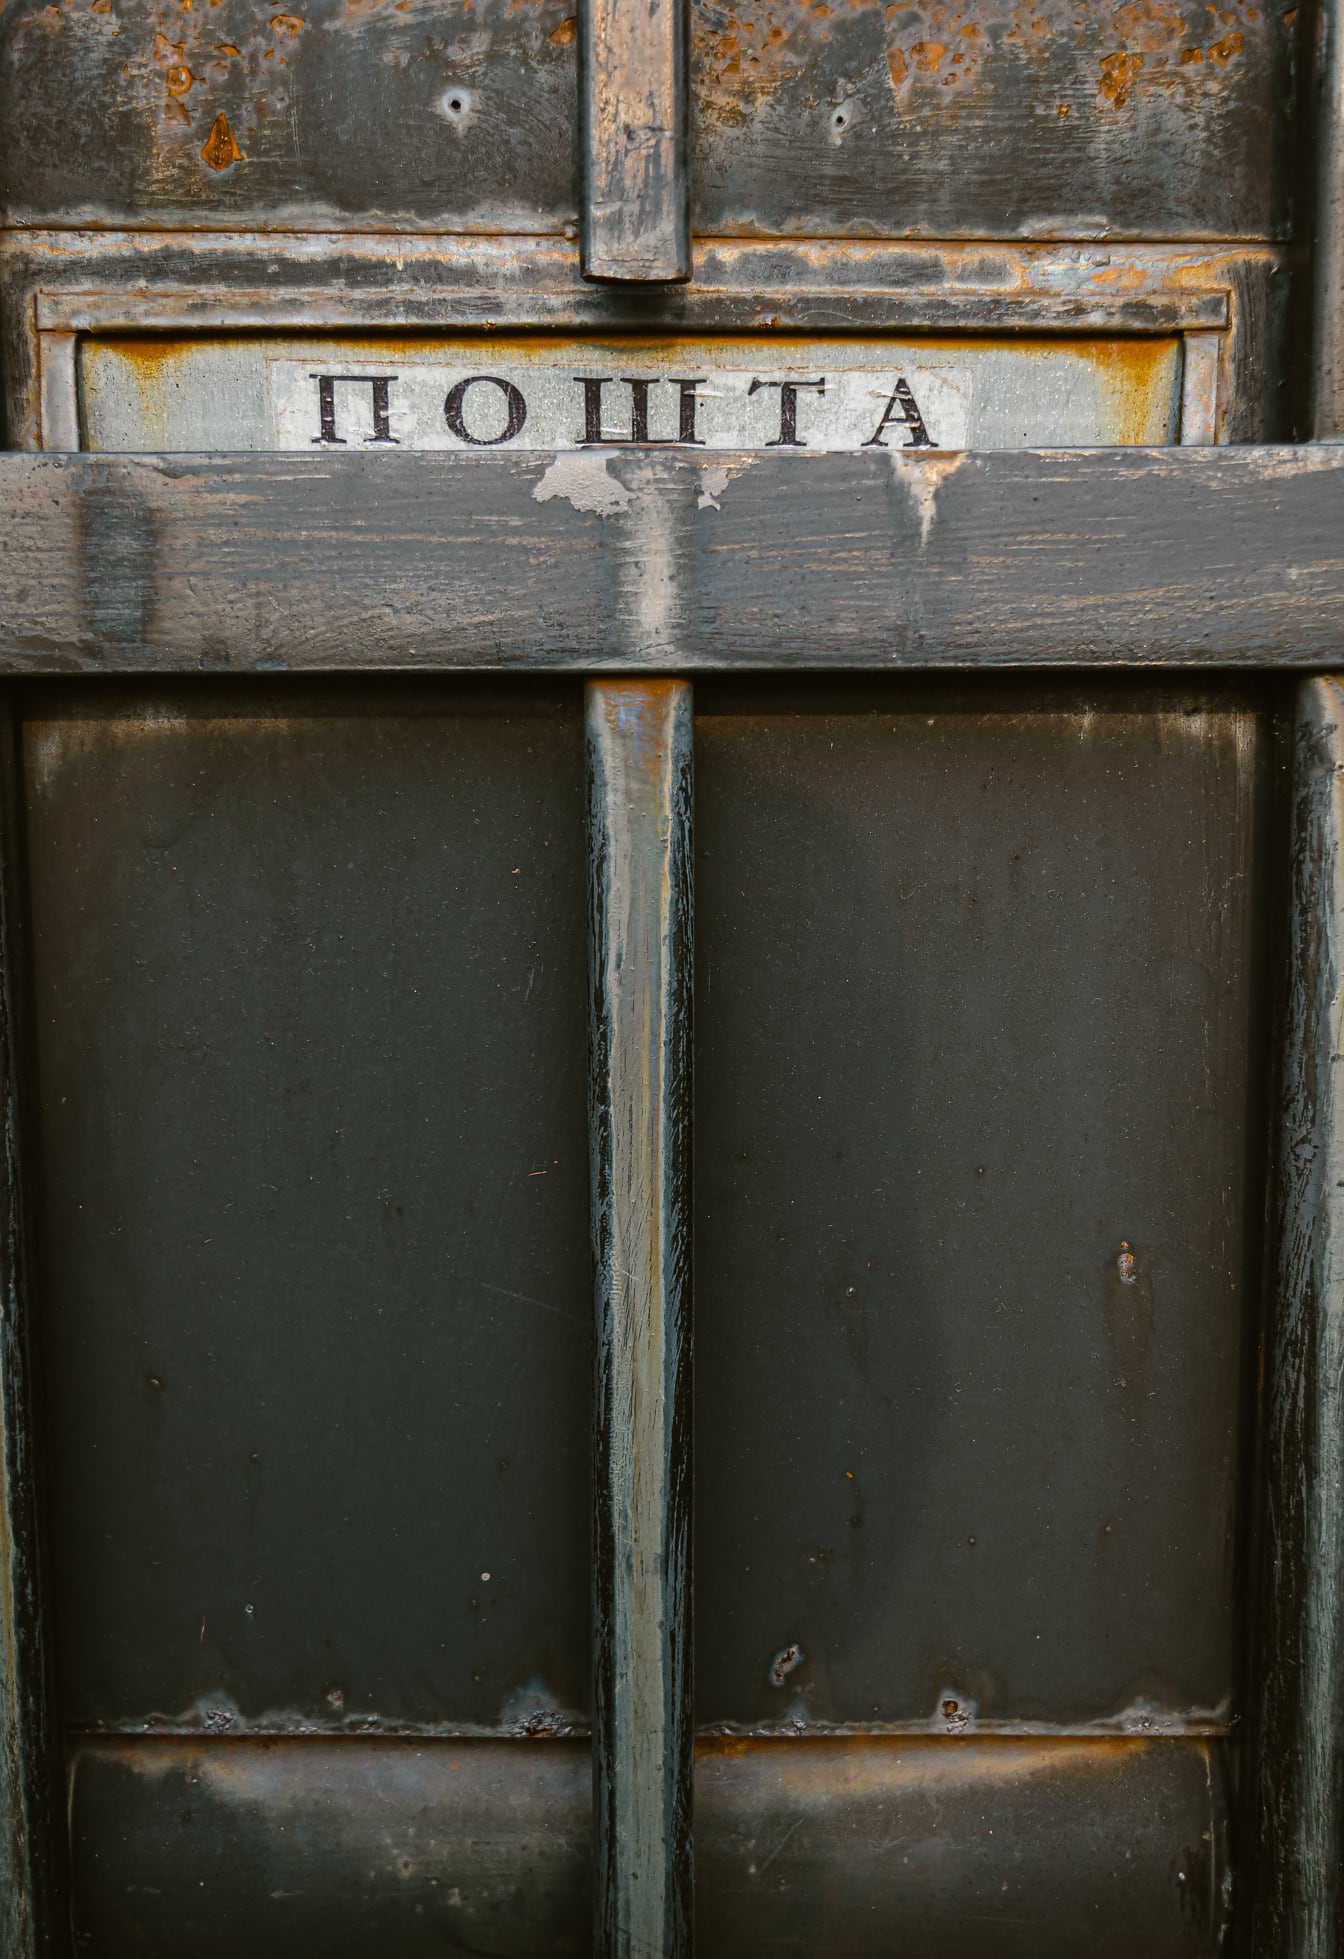 Nærbillede af sort metalpostkasse med kyrillisk tekst